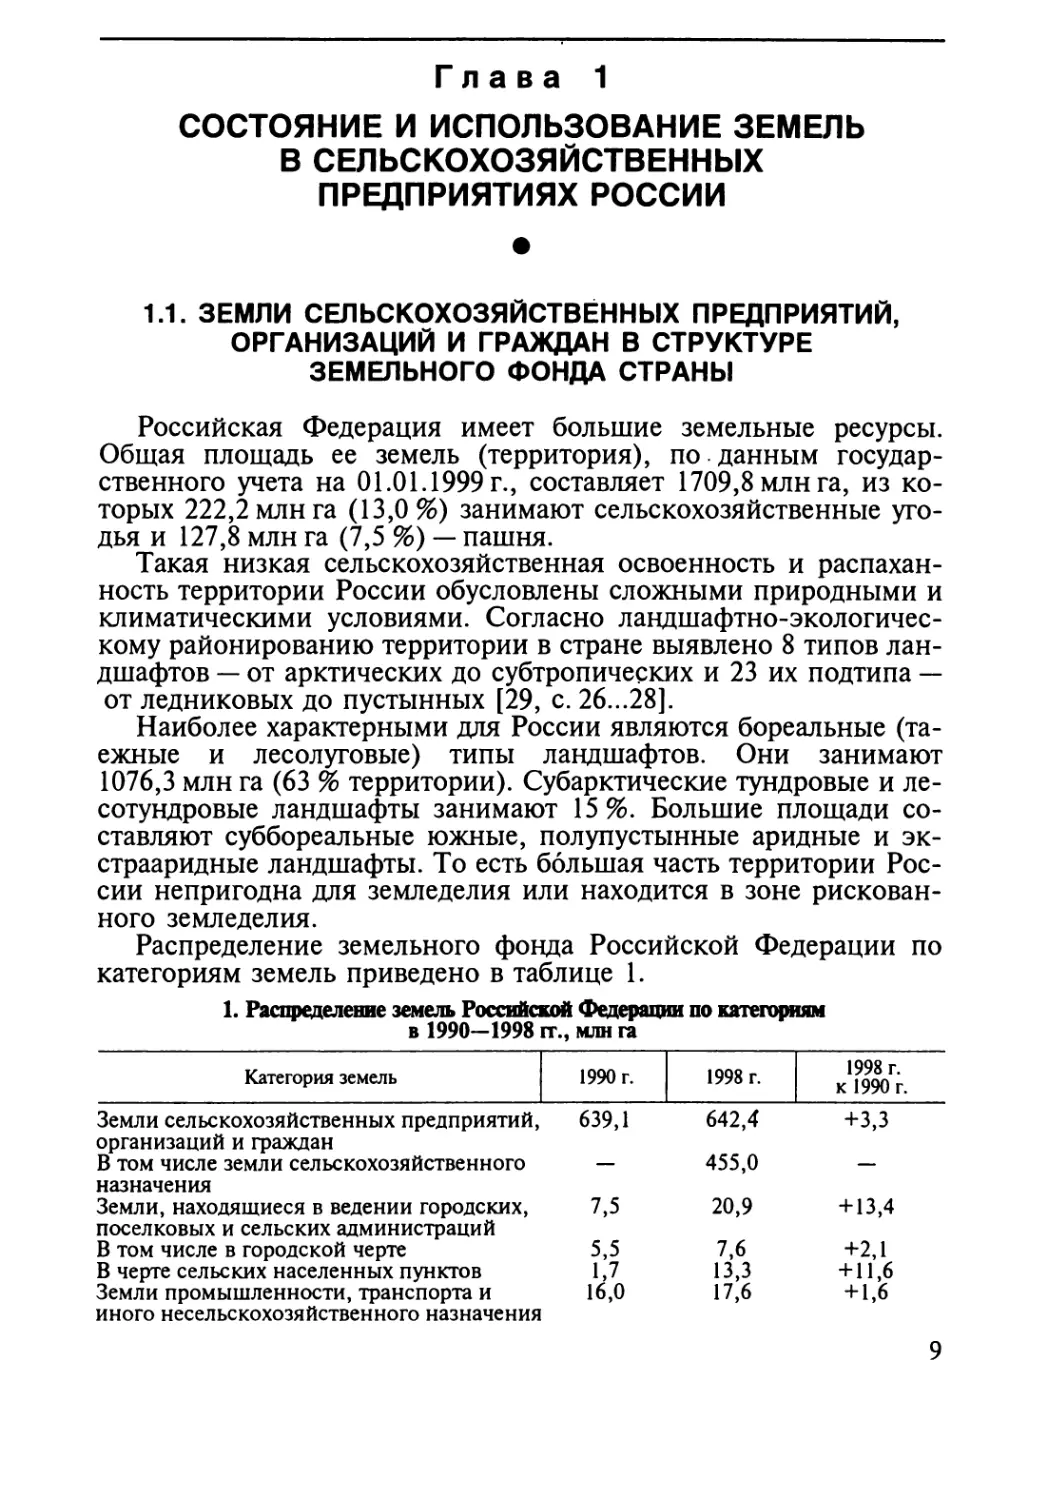 Глава 1. Состояние и использование земель в сельскохозяйственных предпри¬ятиях России